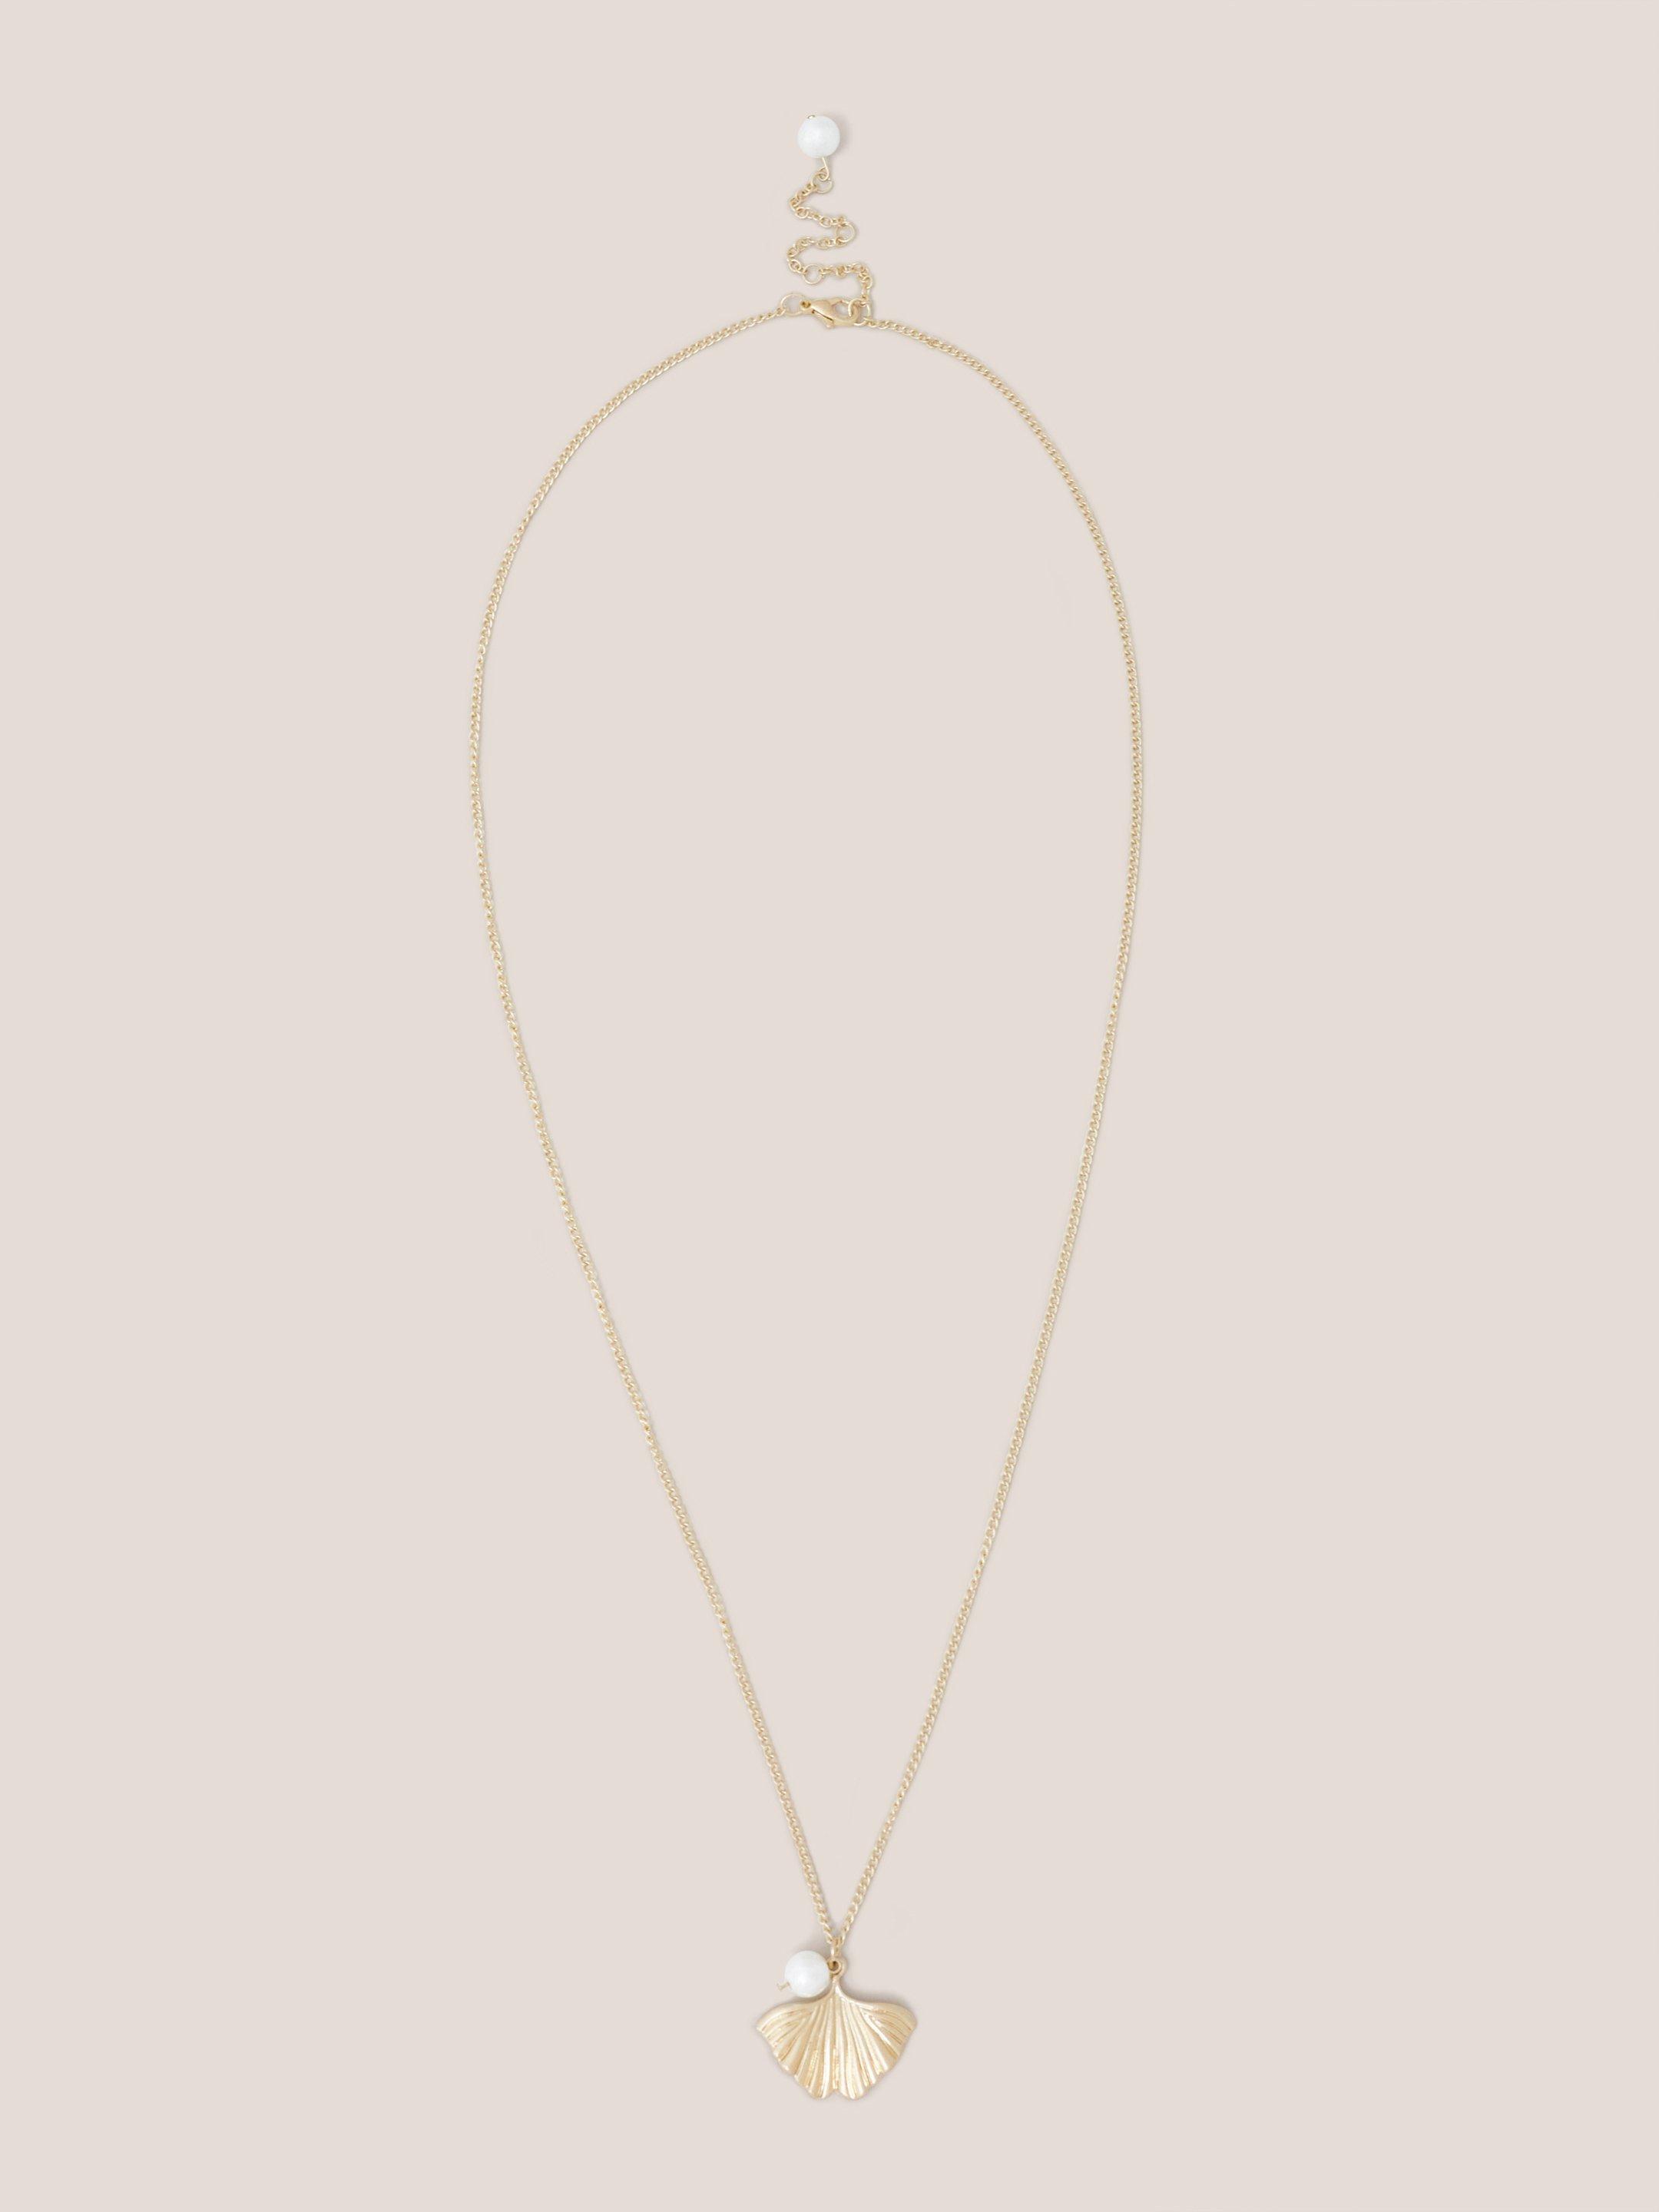 Fan Pearl Pendant Necklace in GLD TN MET - FLAT FRONT